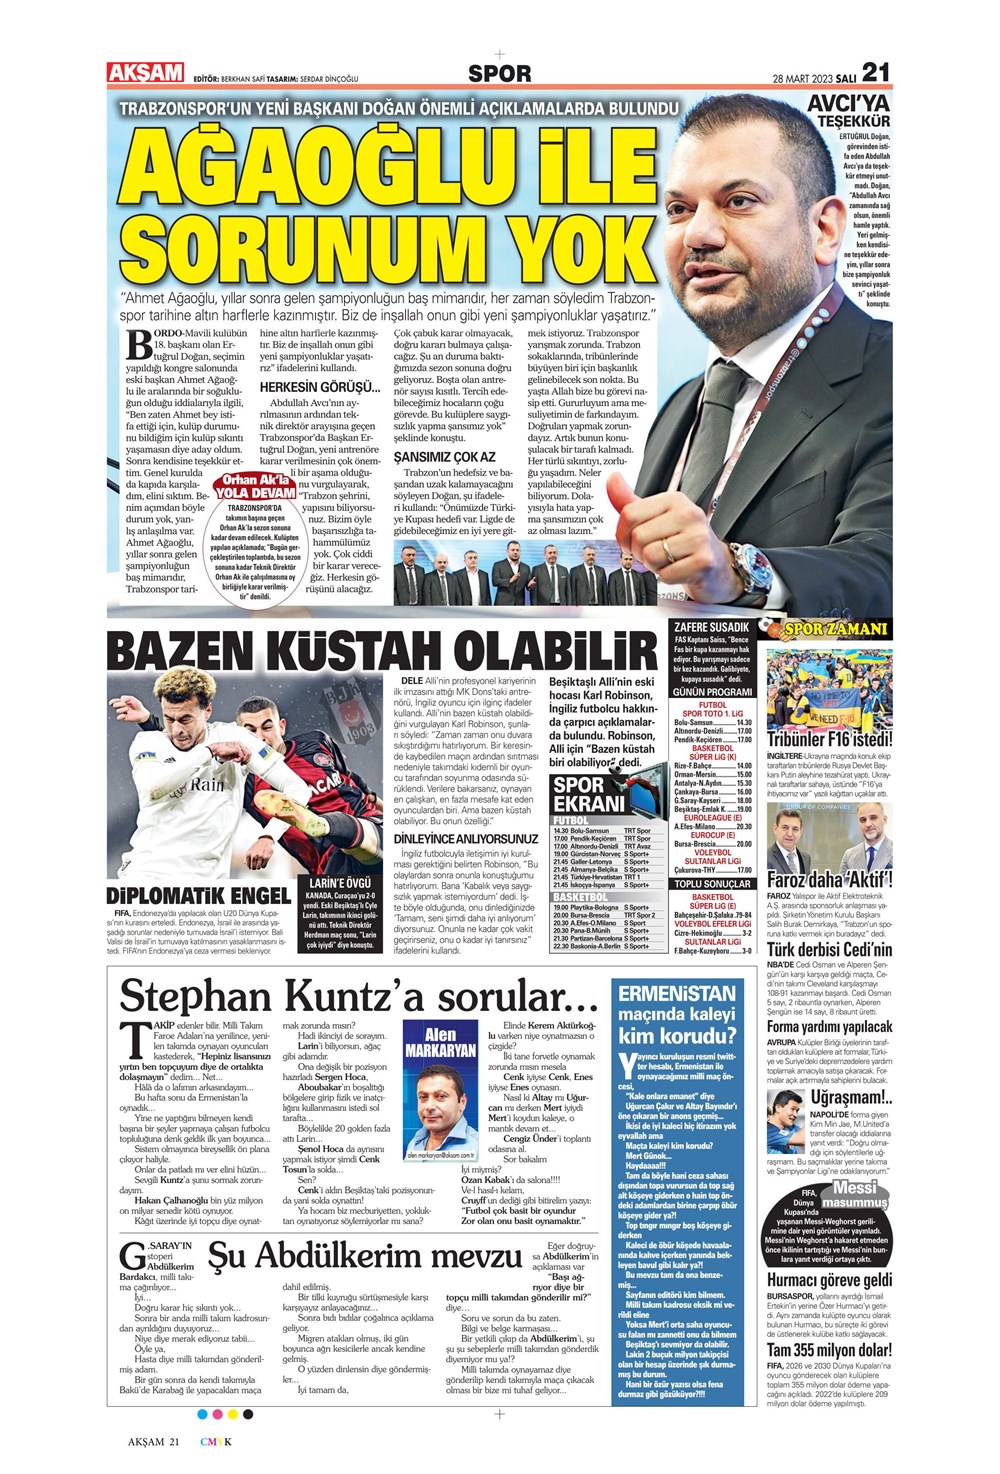 "Vurduğumuz gol olsun" - Sporun manşetleri - 3. Foto